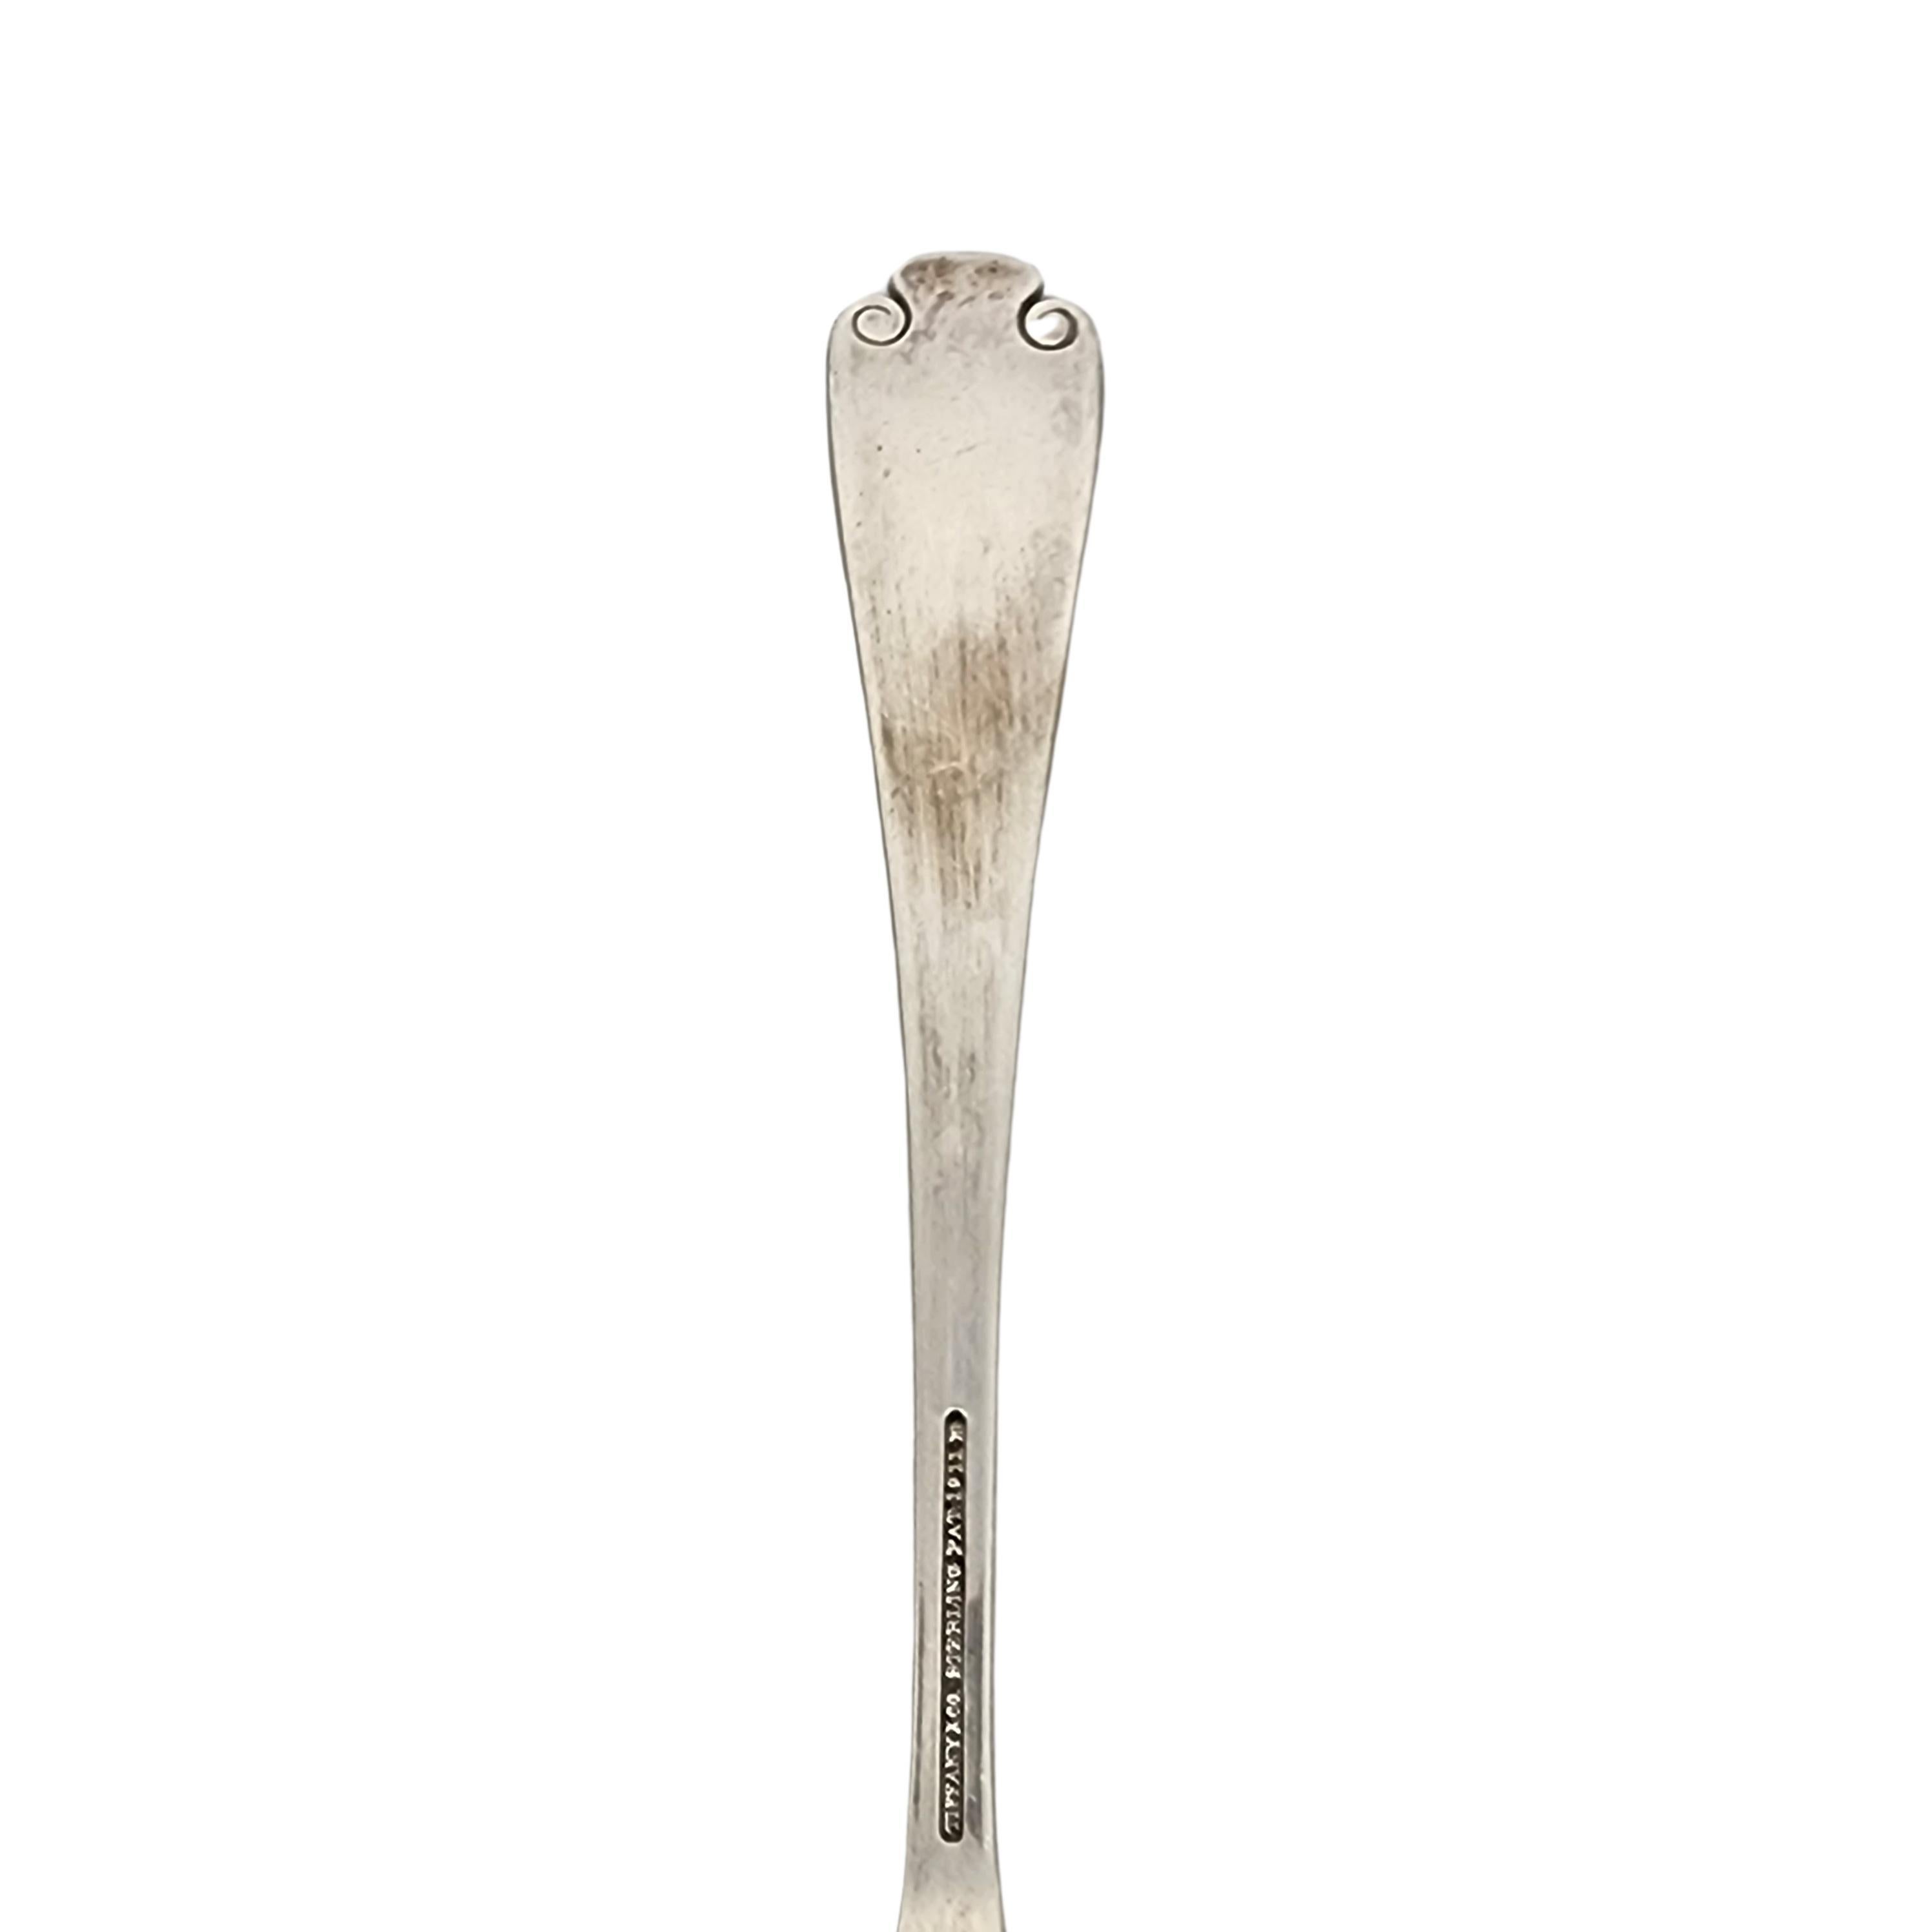 Tiffany & Co Flemish Sterling Silver Serving Fork 8 1/2